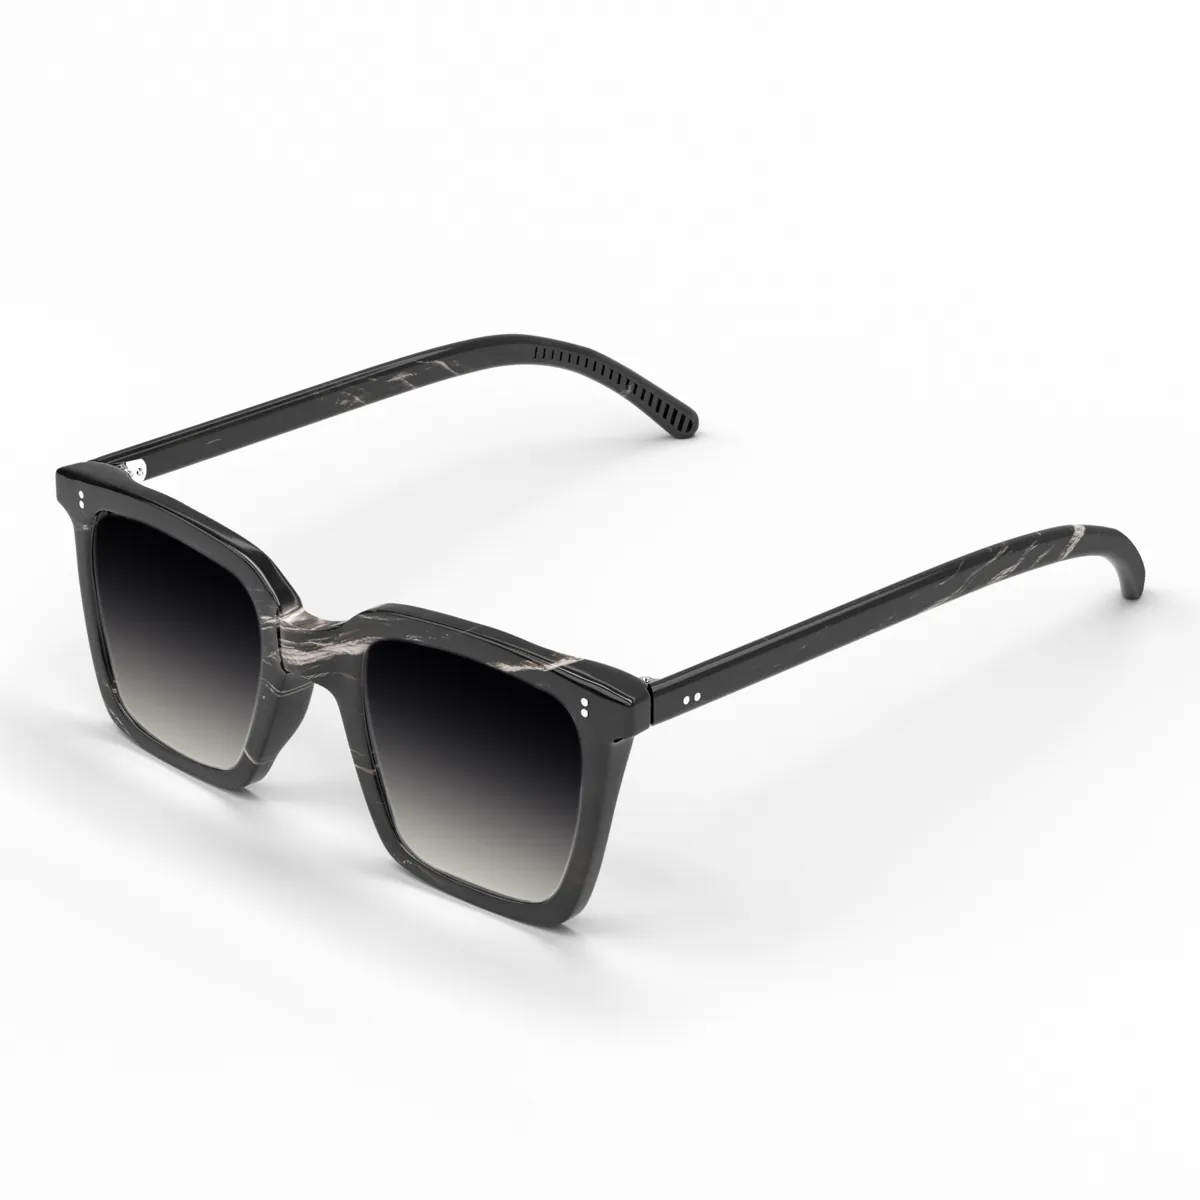 Grand wayfarer Sunglasses